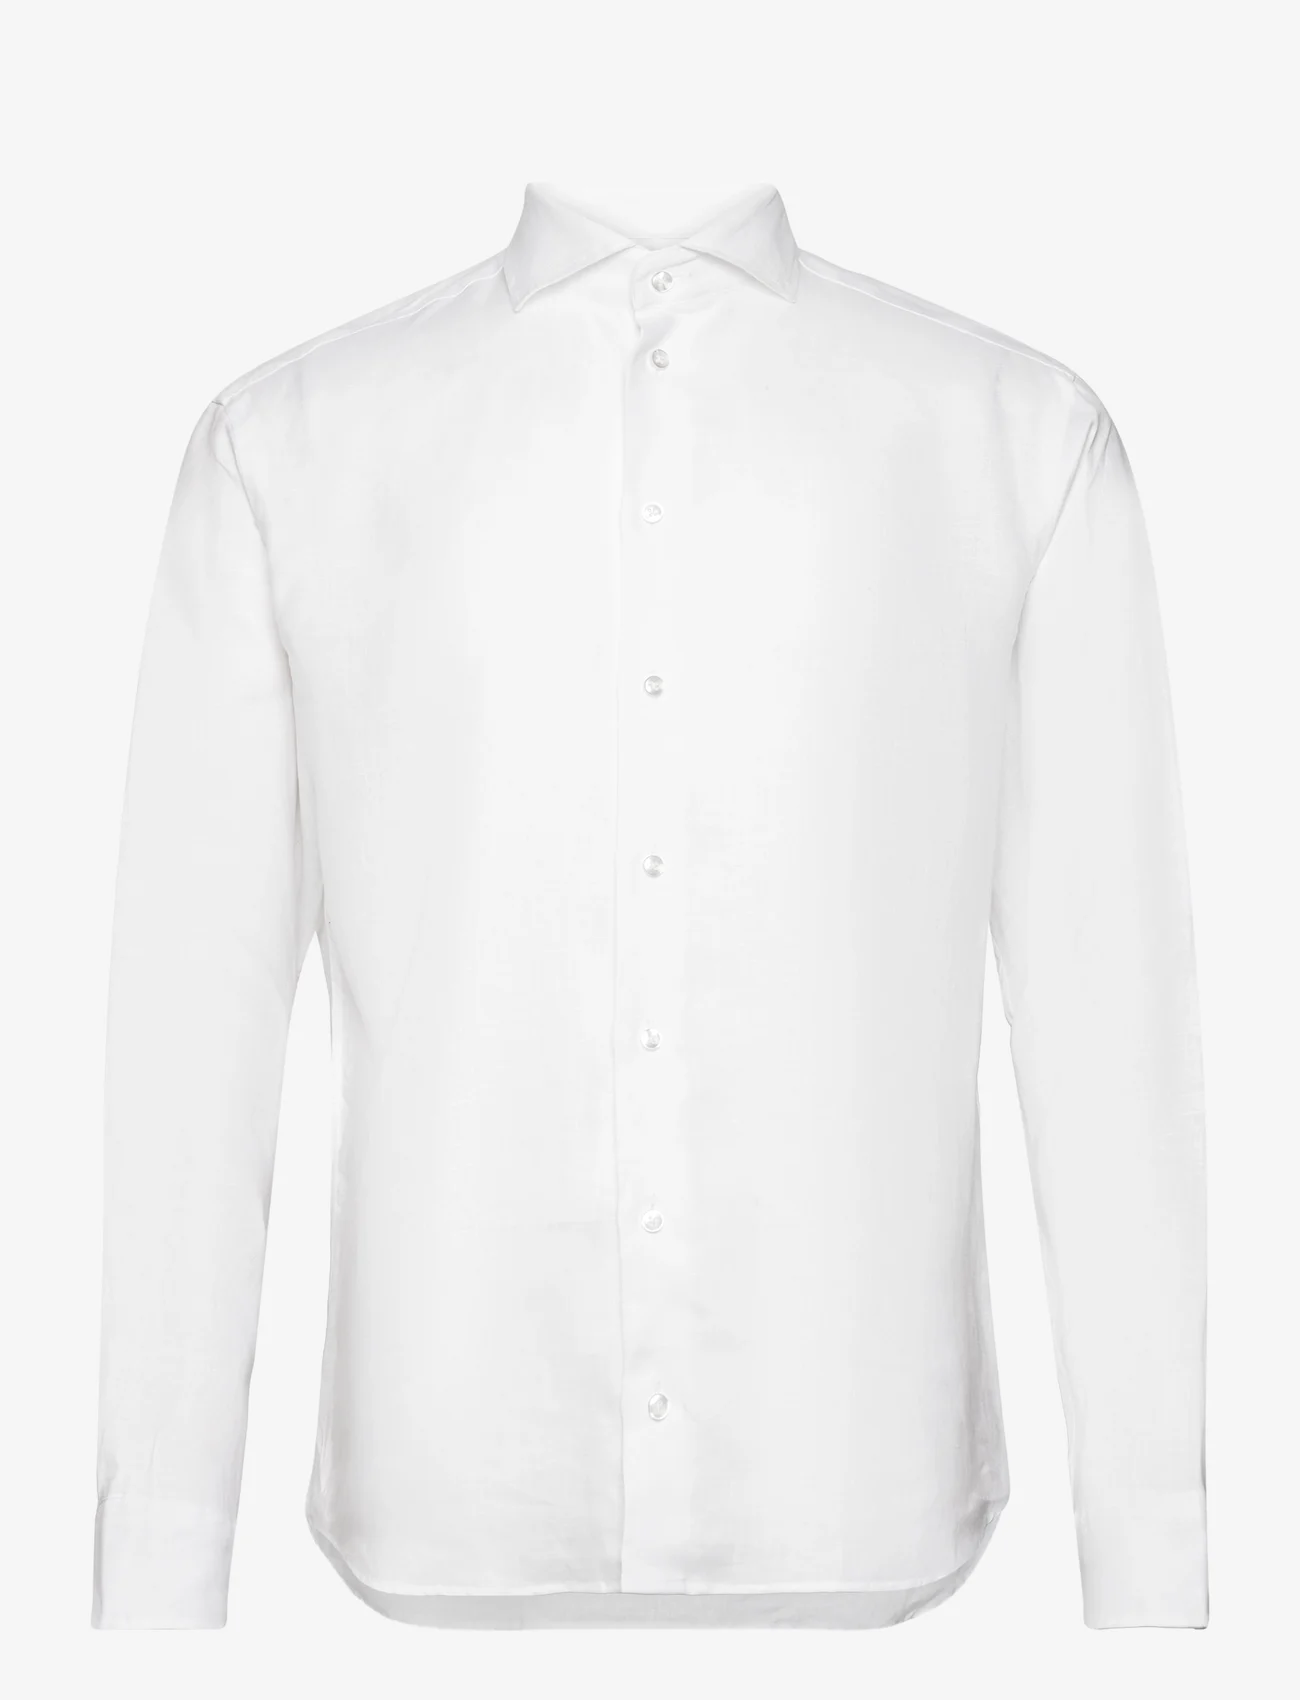 Bosweel Shirts Est. 1937 - Regular fit Men shirt - hørskjorter - white - 0